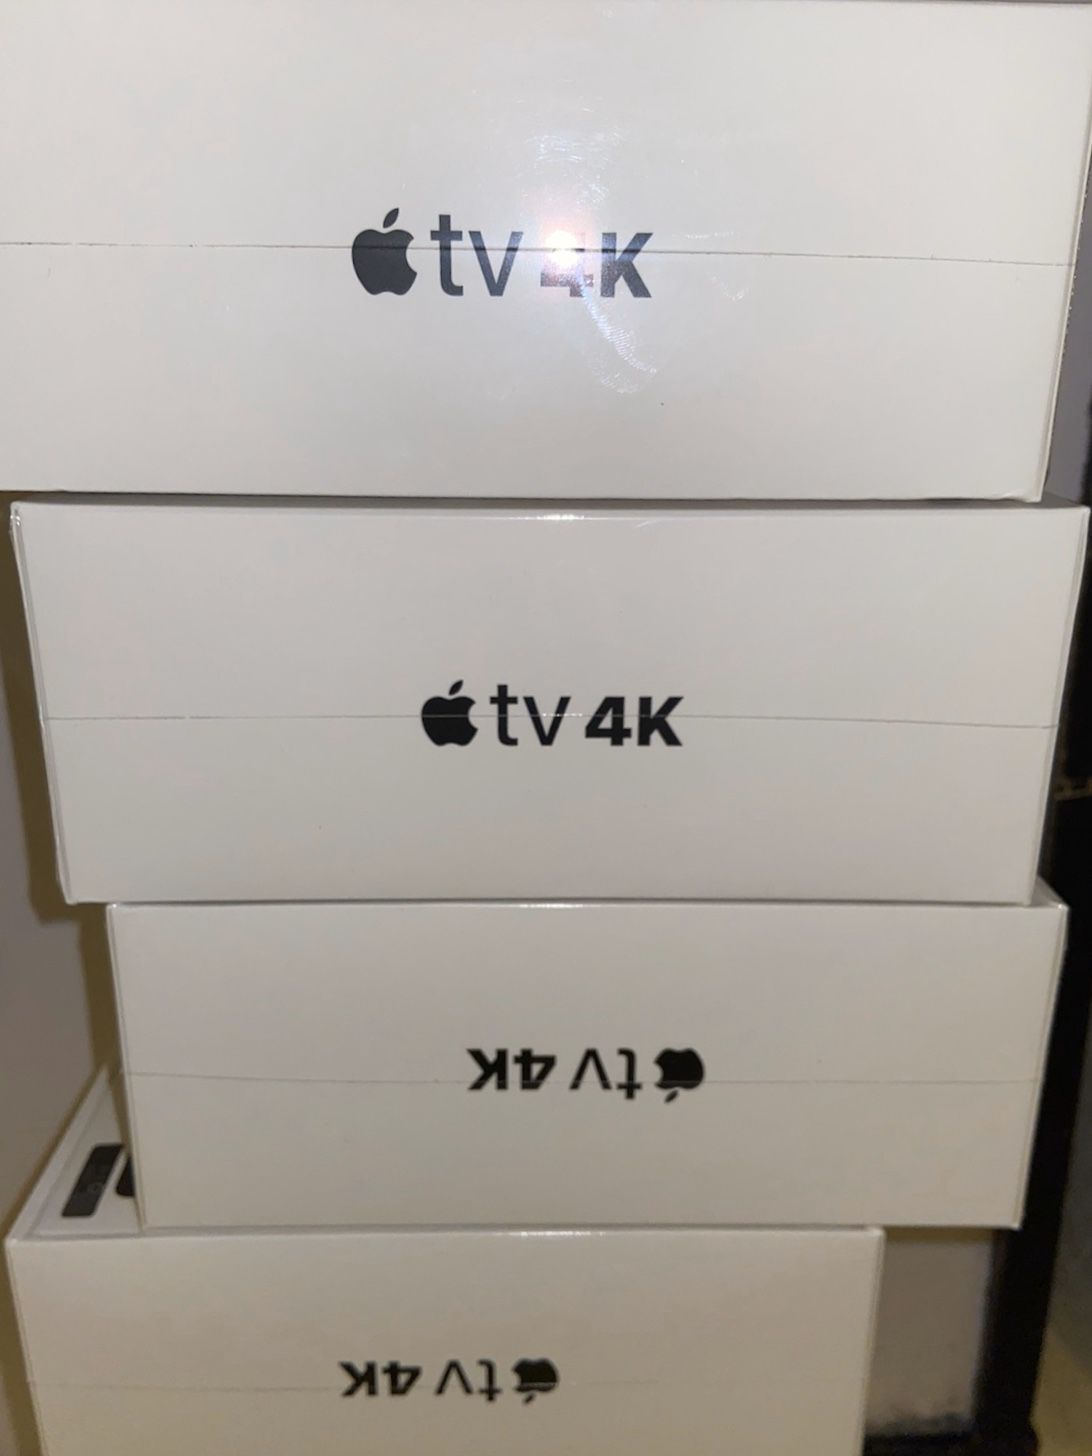 Apple TV’s